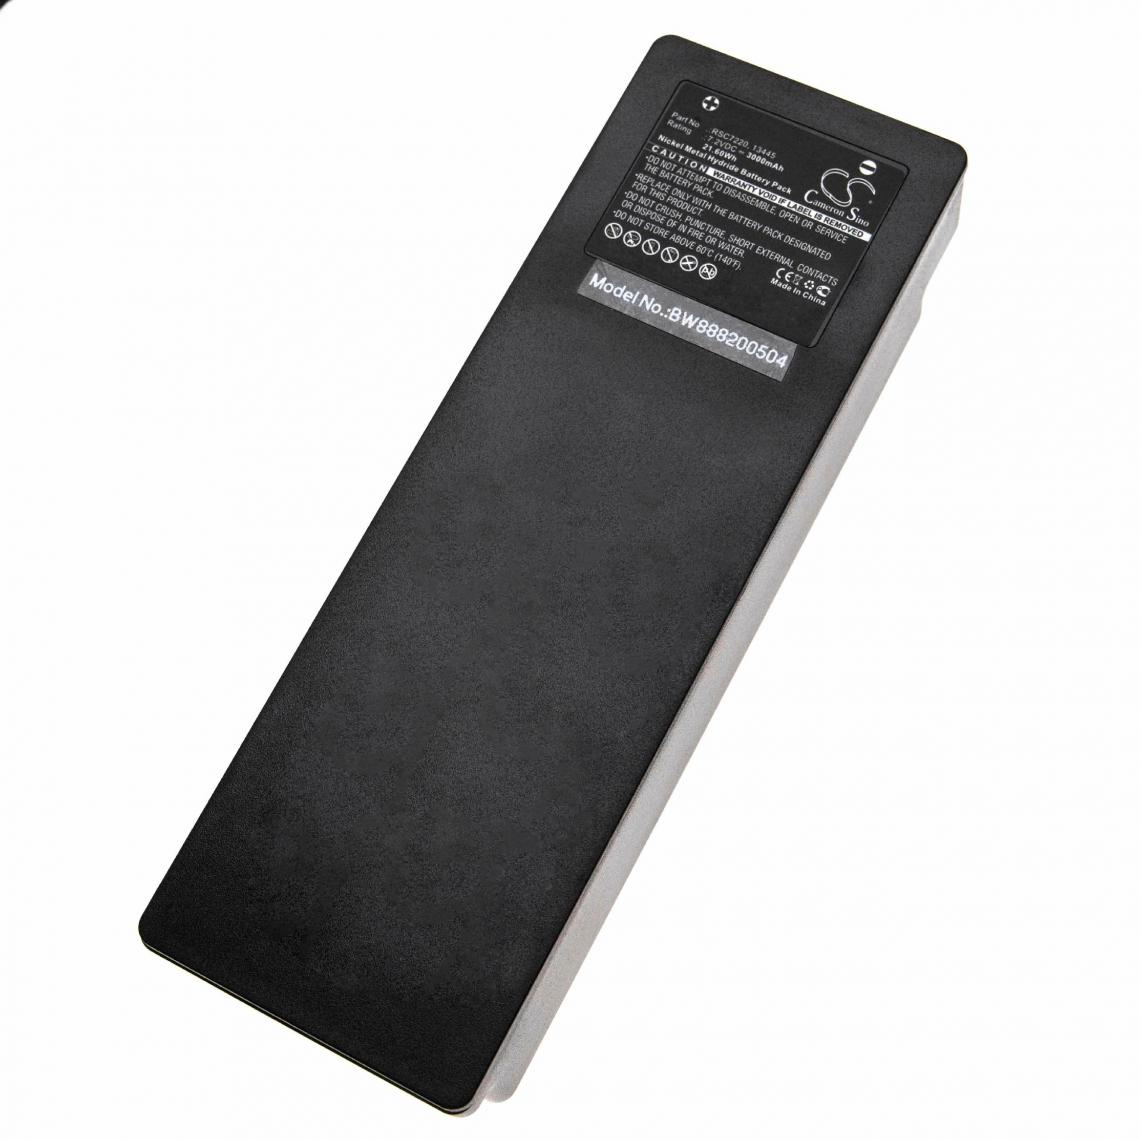 Vhbw - vhbw Batterie compatible avec Scanreco 16131, 590, 592, 790, 960, BS590, Cifa, EA2512 Télécommande Industrielle (3000mAh, 7.2V, NiMH) - Autre appareil de mesure